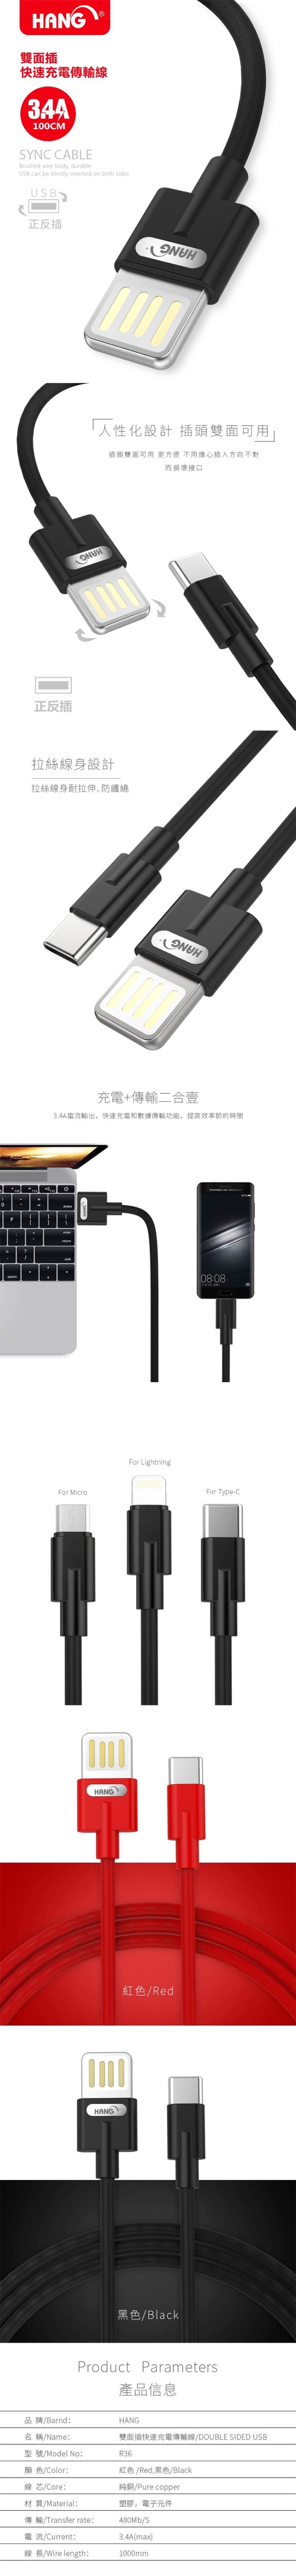 【HANG】Micro-USB 3.4A雙面插快速充電傳輸線(R36)